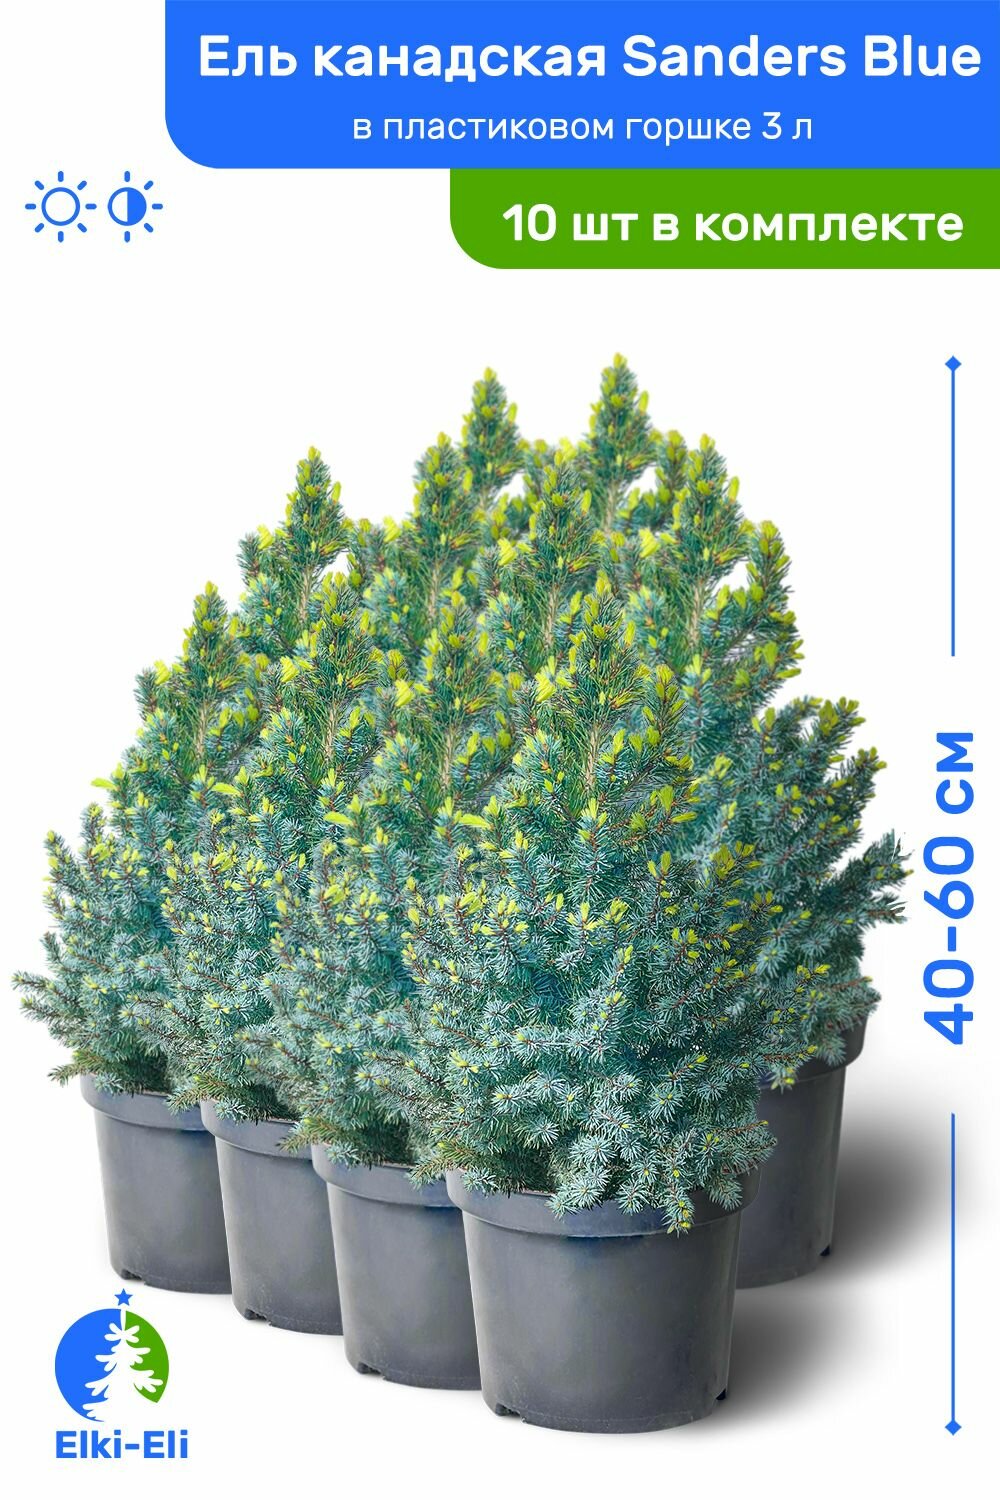 Ель канадская Sanders Blue (Сандерс Блю) 40-60 см в пластиковом горшке 3 л саженец хвойное живое растение комплект из 10 шт